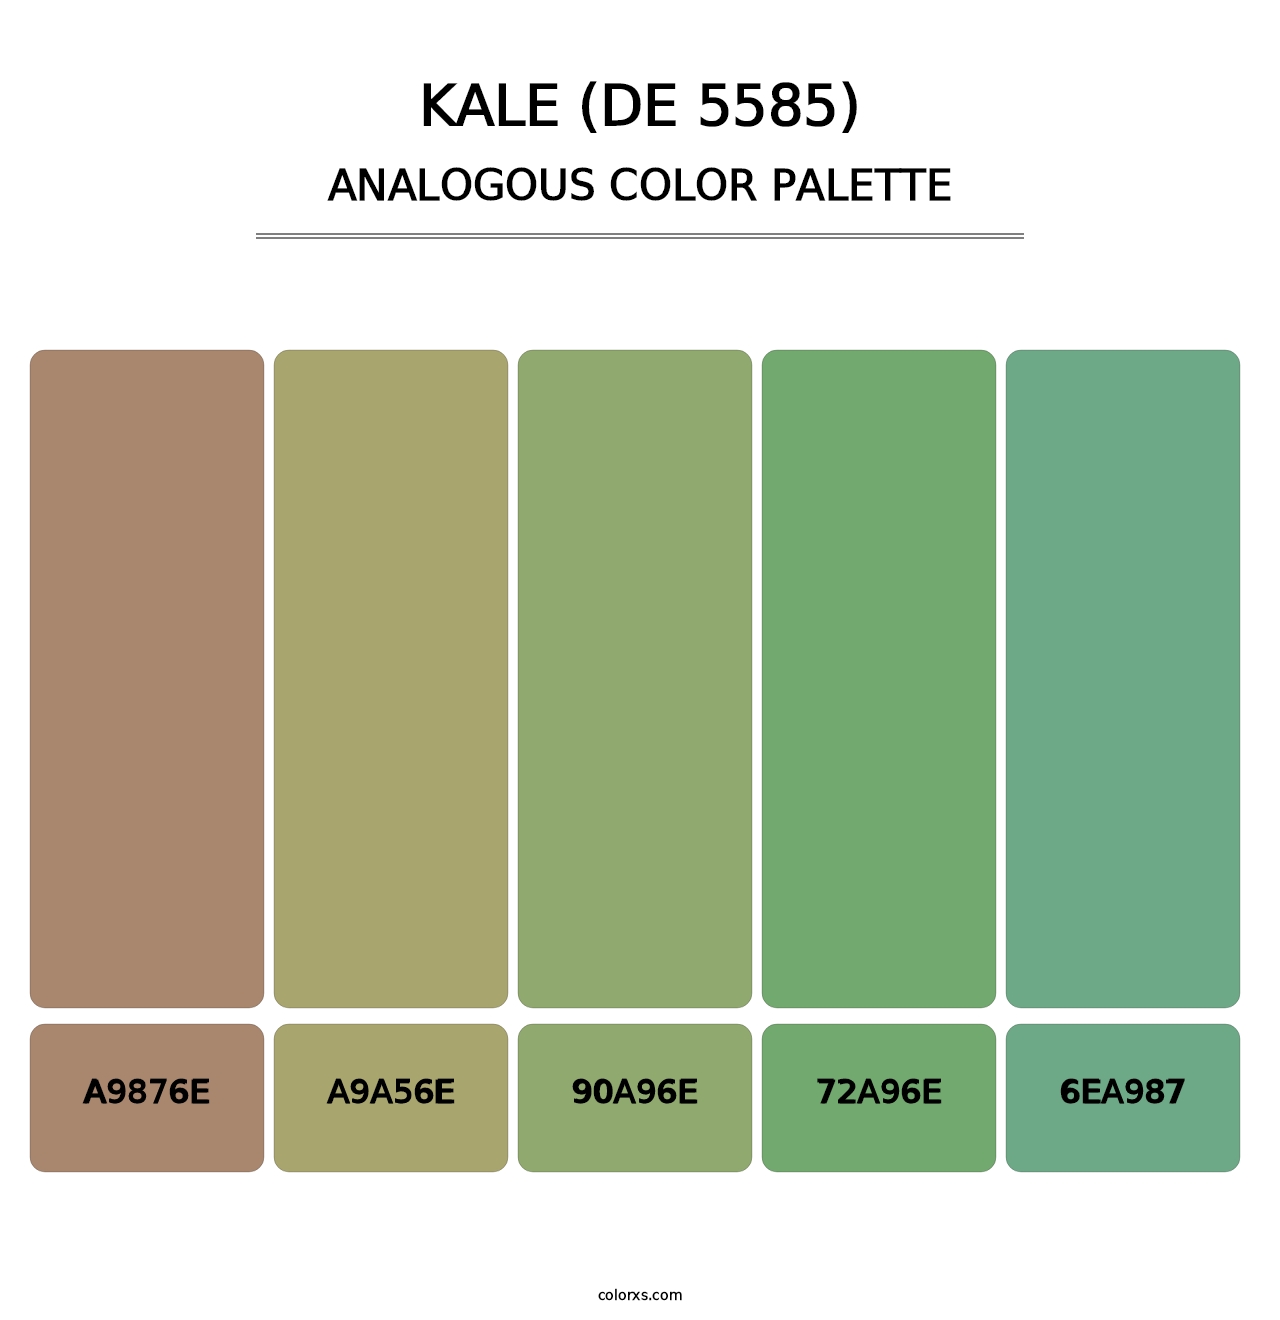 Kale (DE 5585) - Analogous Color Palette